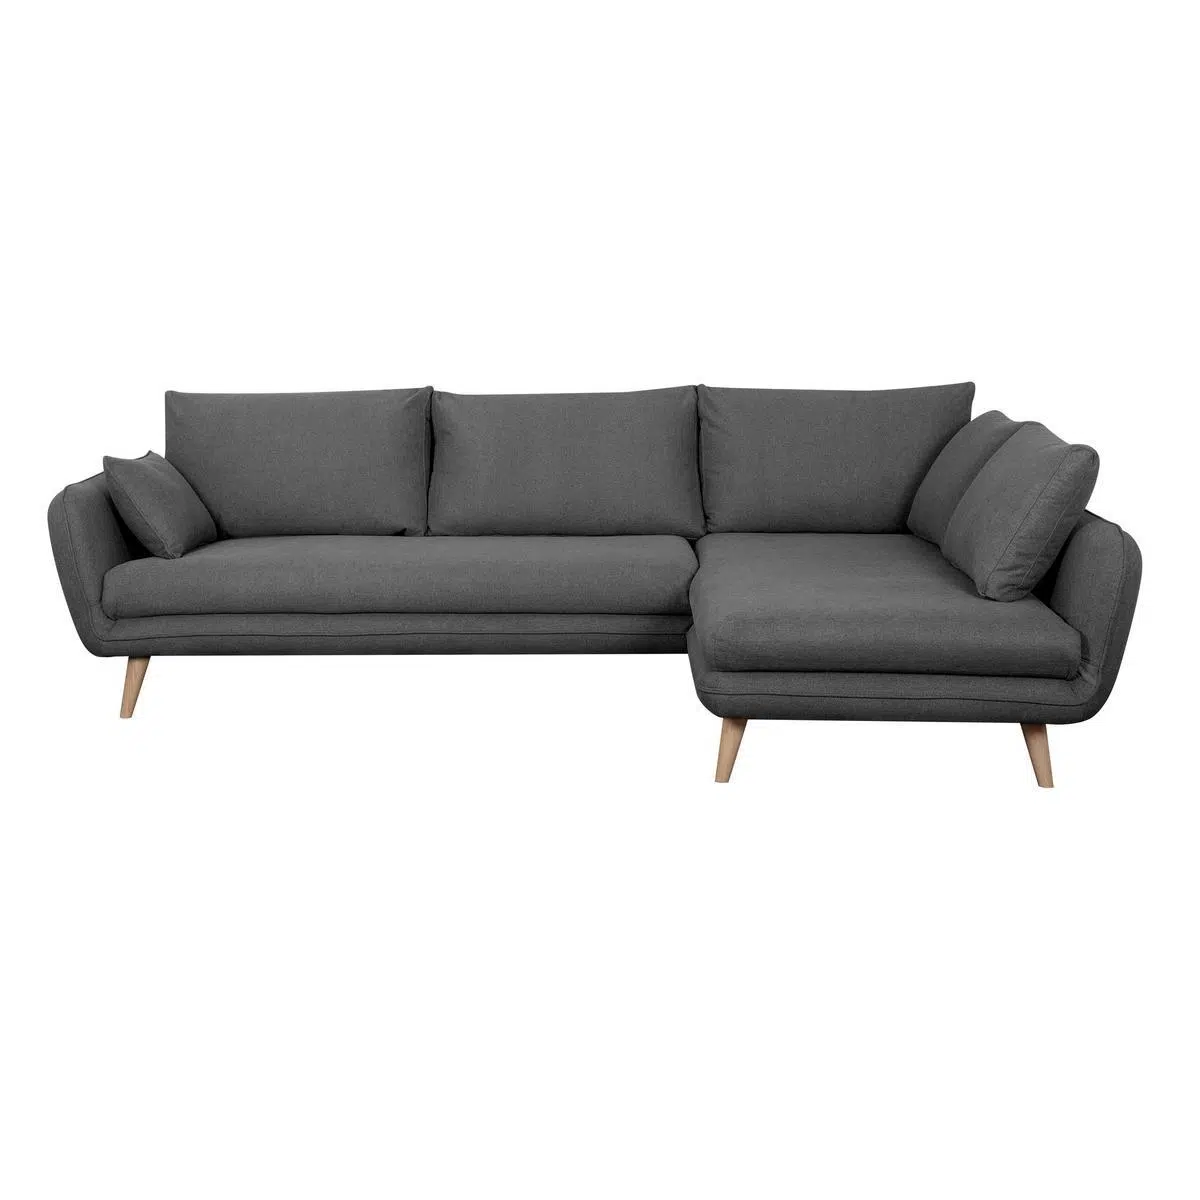 Canapé d'angle droit scandinave 5 places en tissu gris anthracite et bois clair CREEP